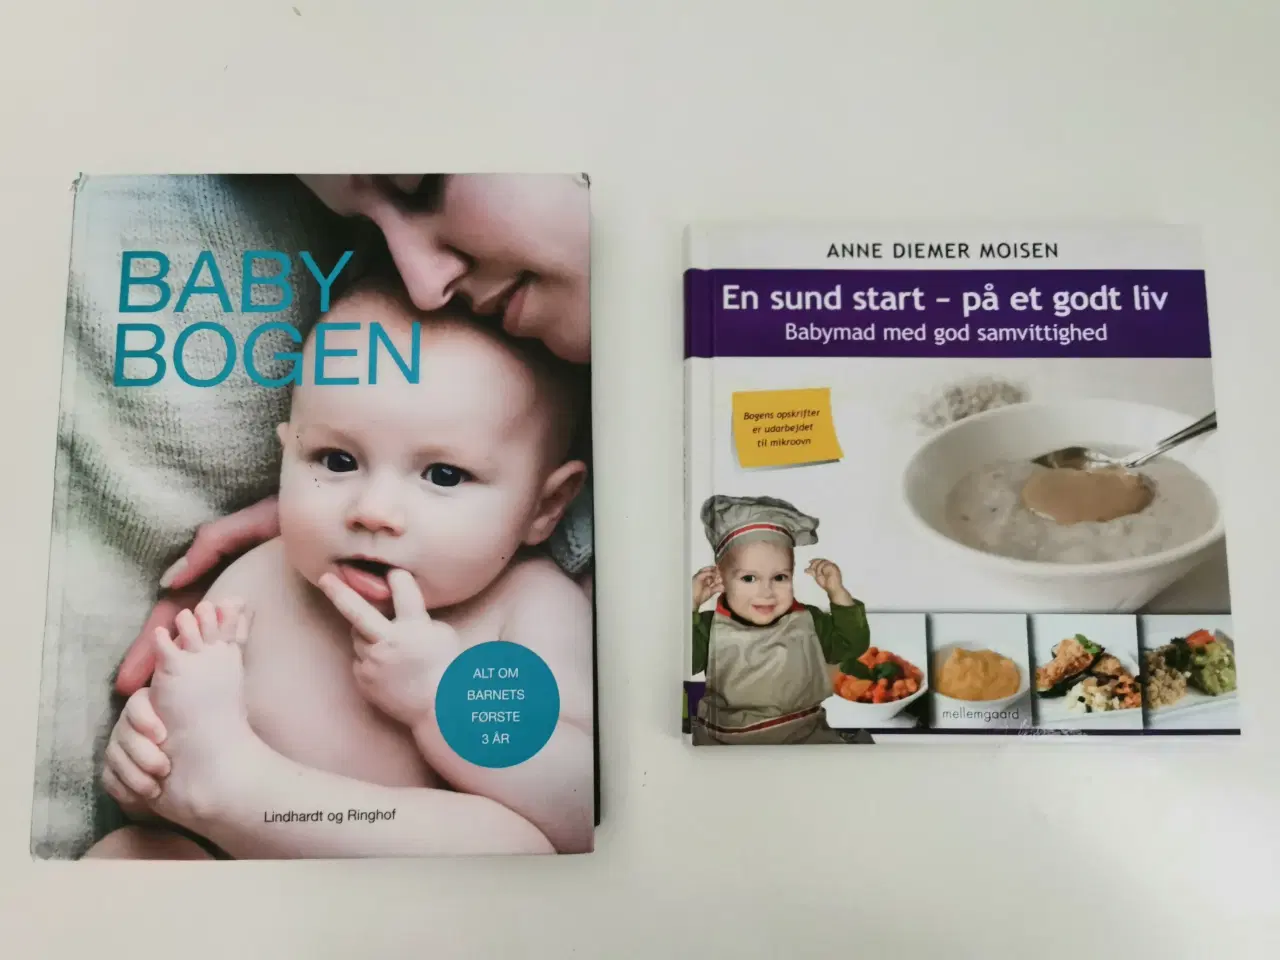 Billede 1 - Baby bogen og en sund start på et godt liv, med ba